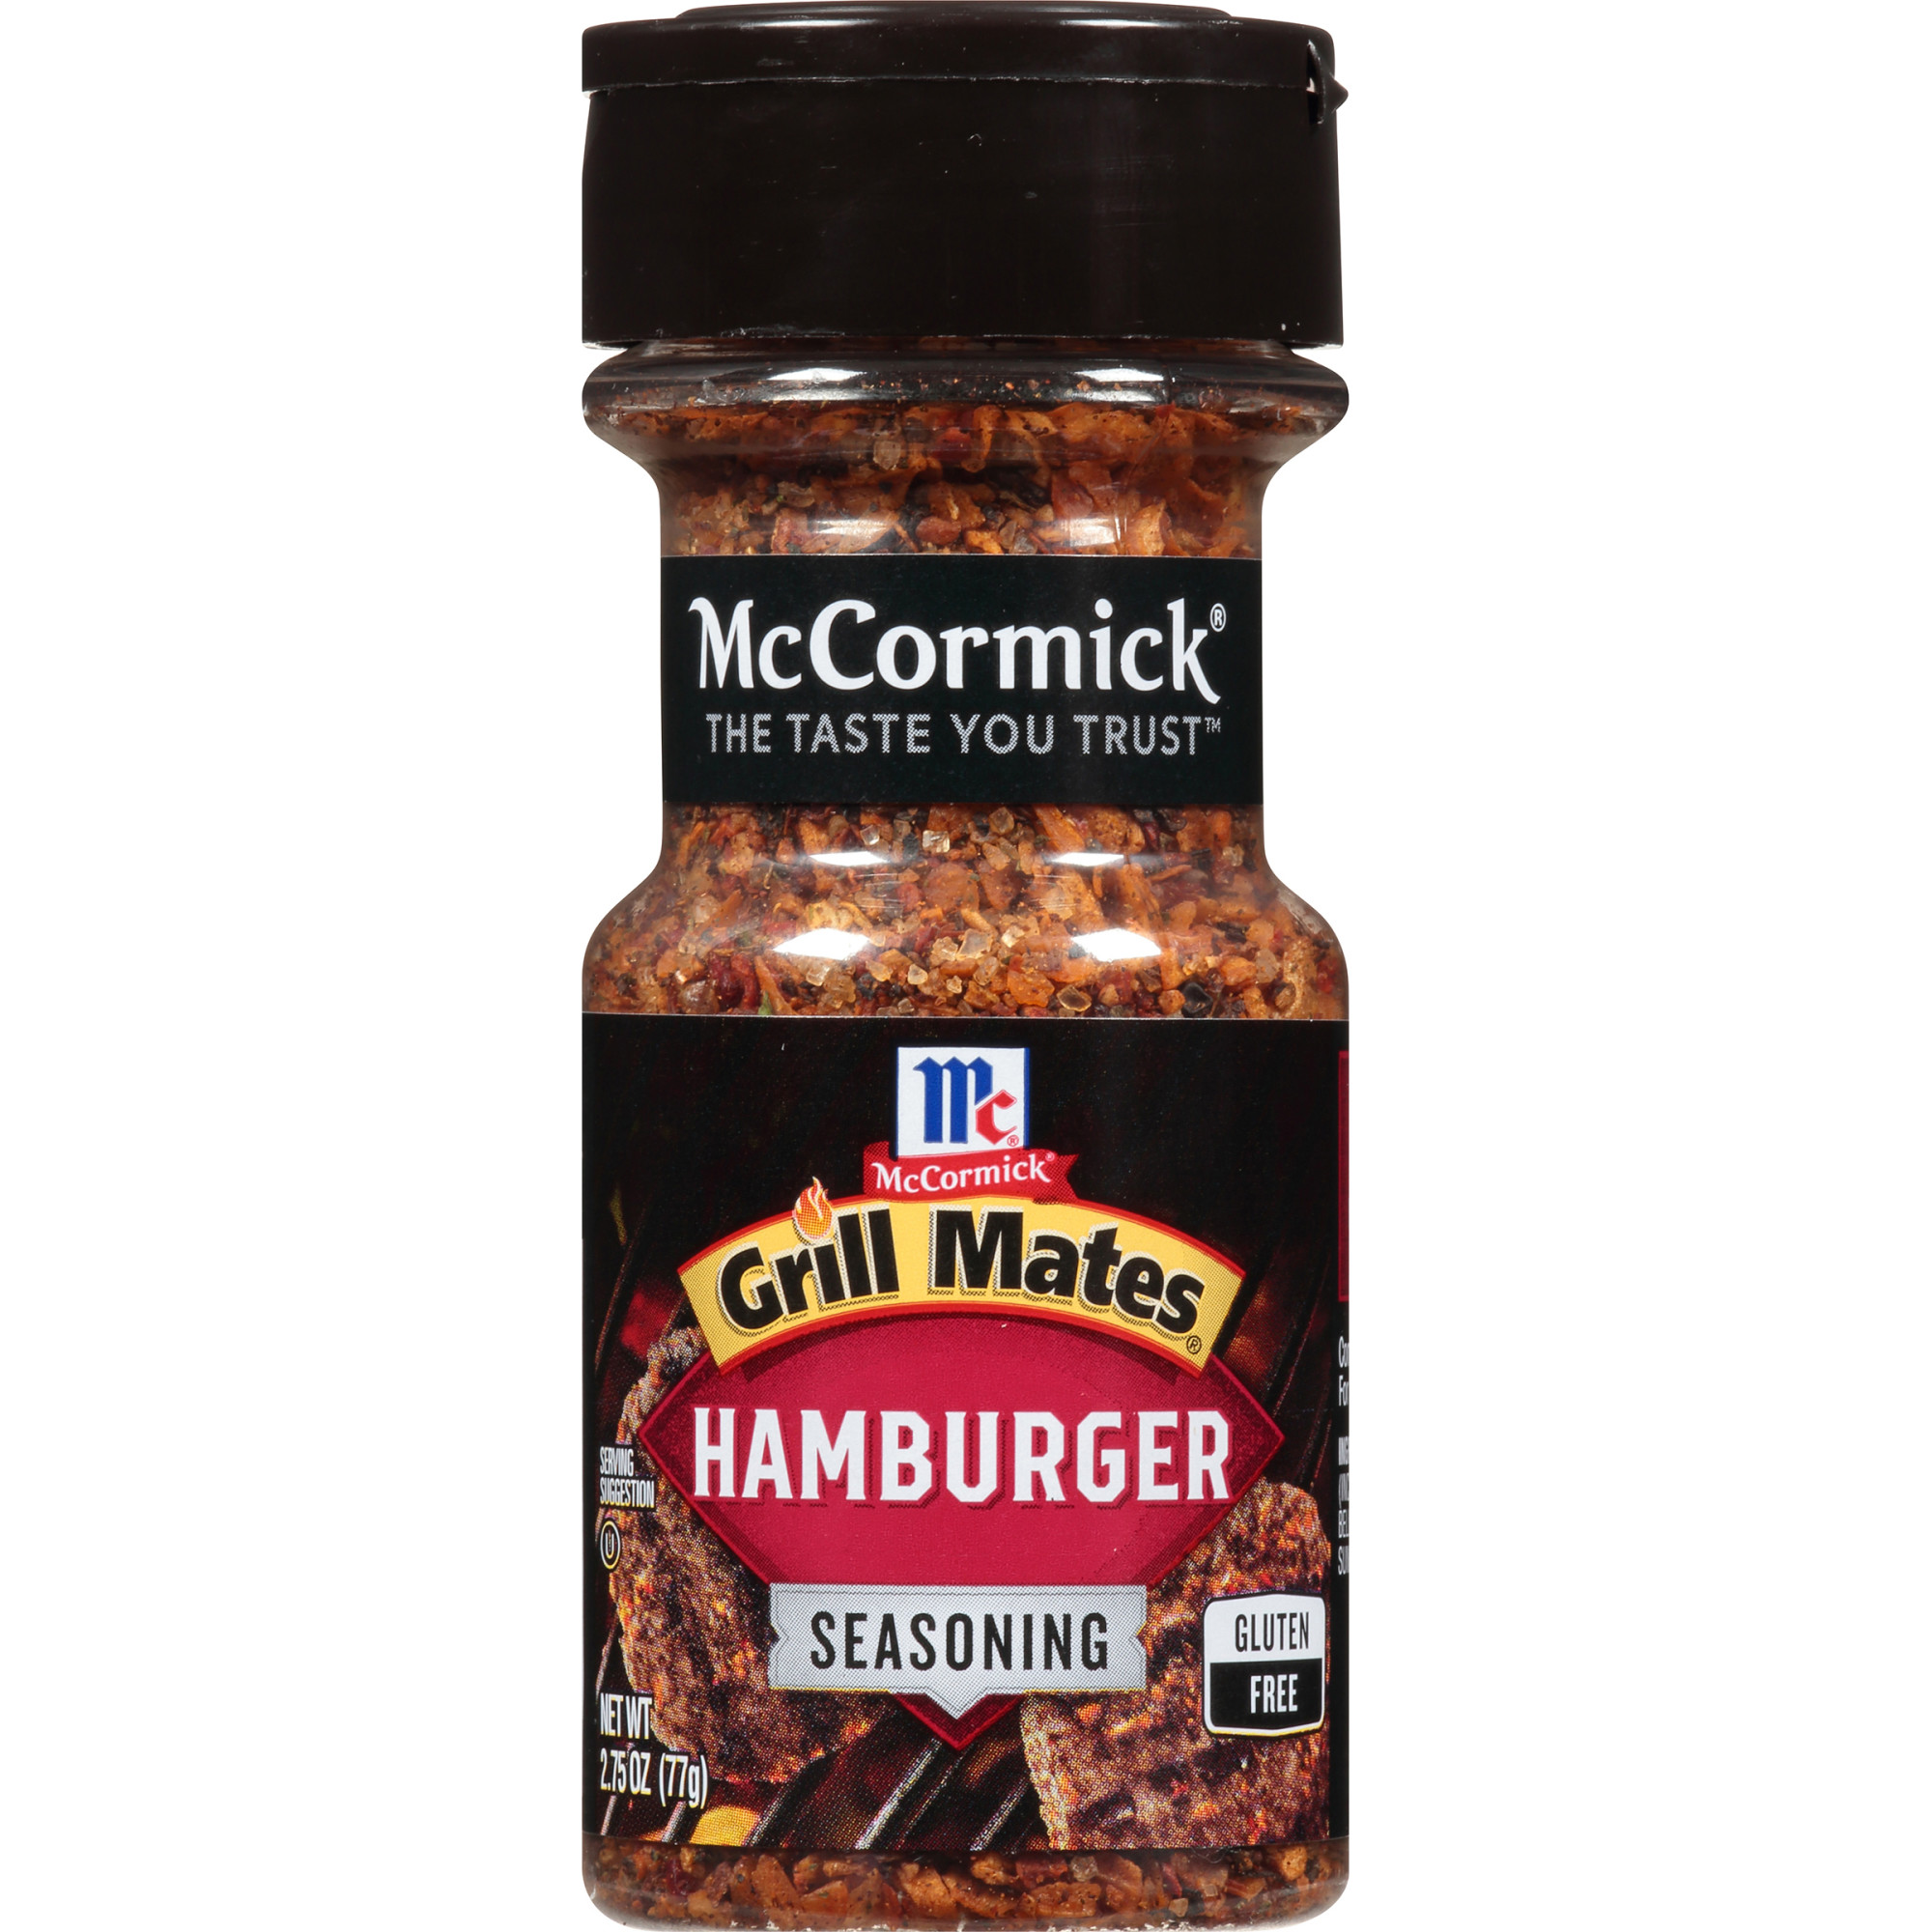 McCormick Grill Mates Hamburger Seasoning, 2.75 oz Mixed Spices & Seasonings - image 1 of 13